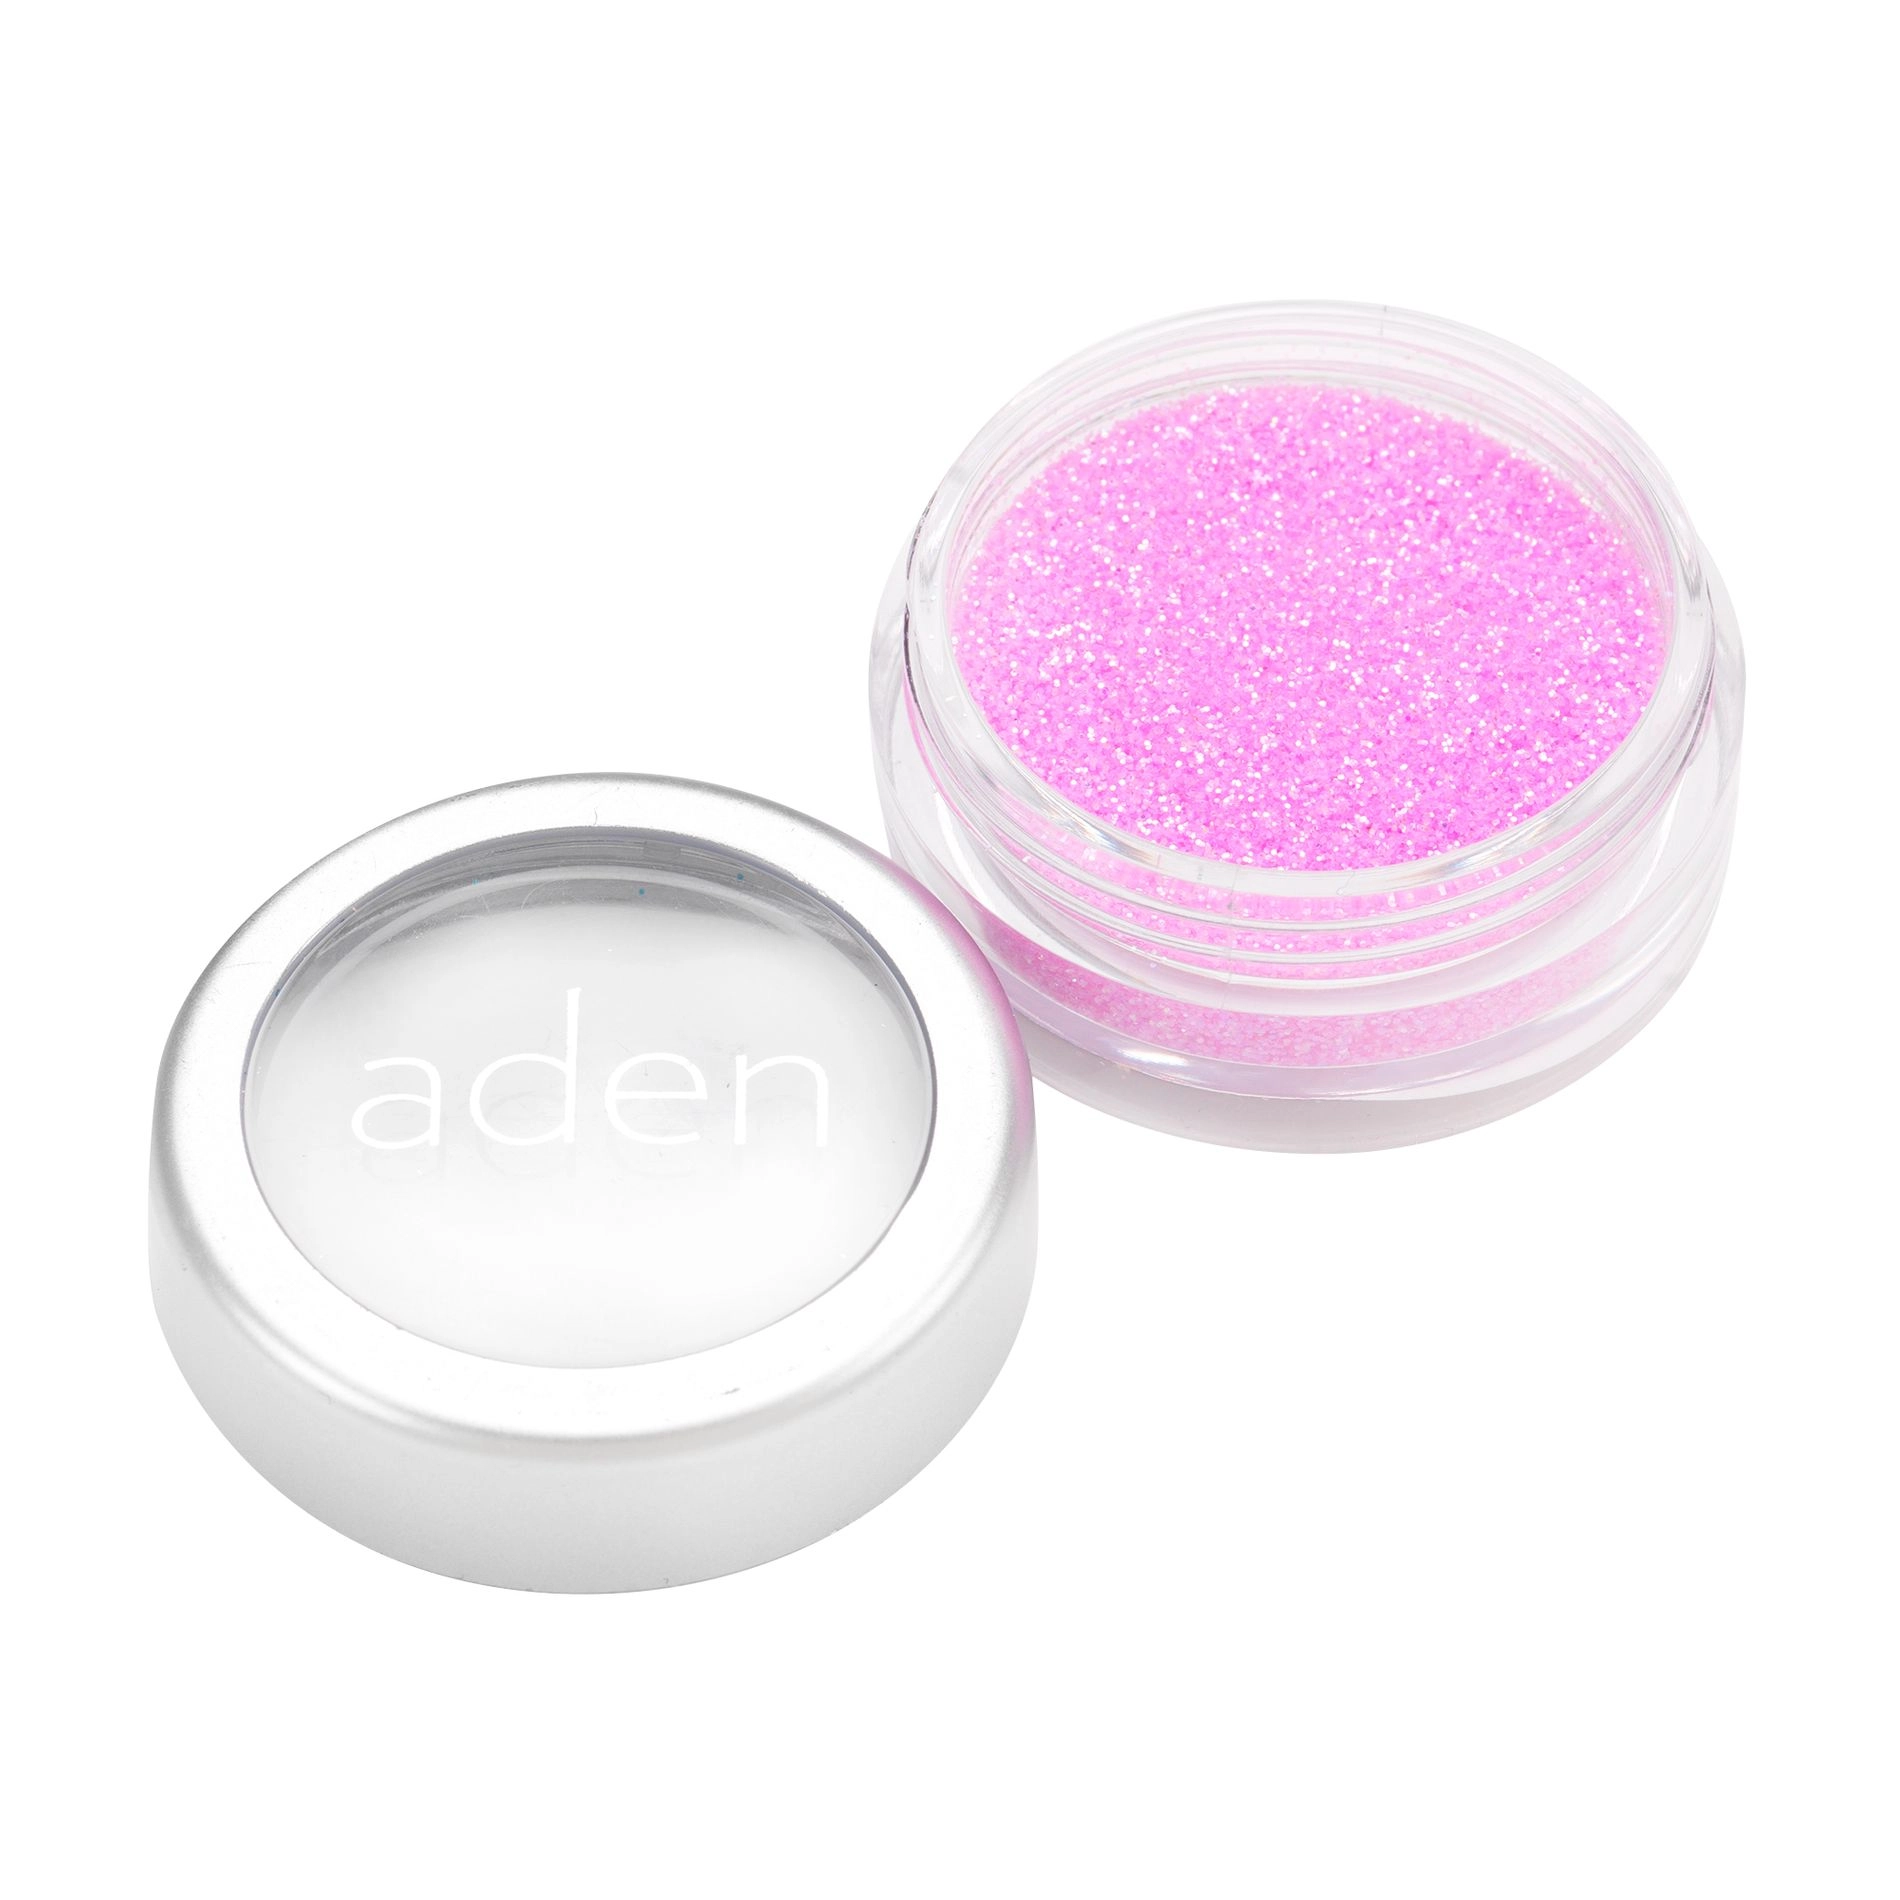 Aden Розсипчастий глітер для обличчя Glitter Powder 09 Orchid, 5 г - фото N1